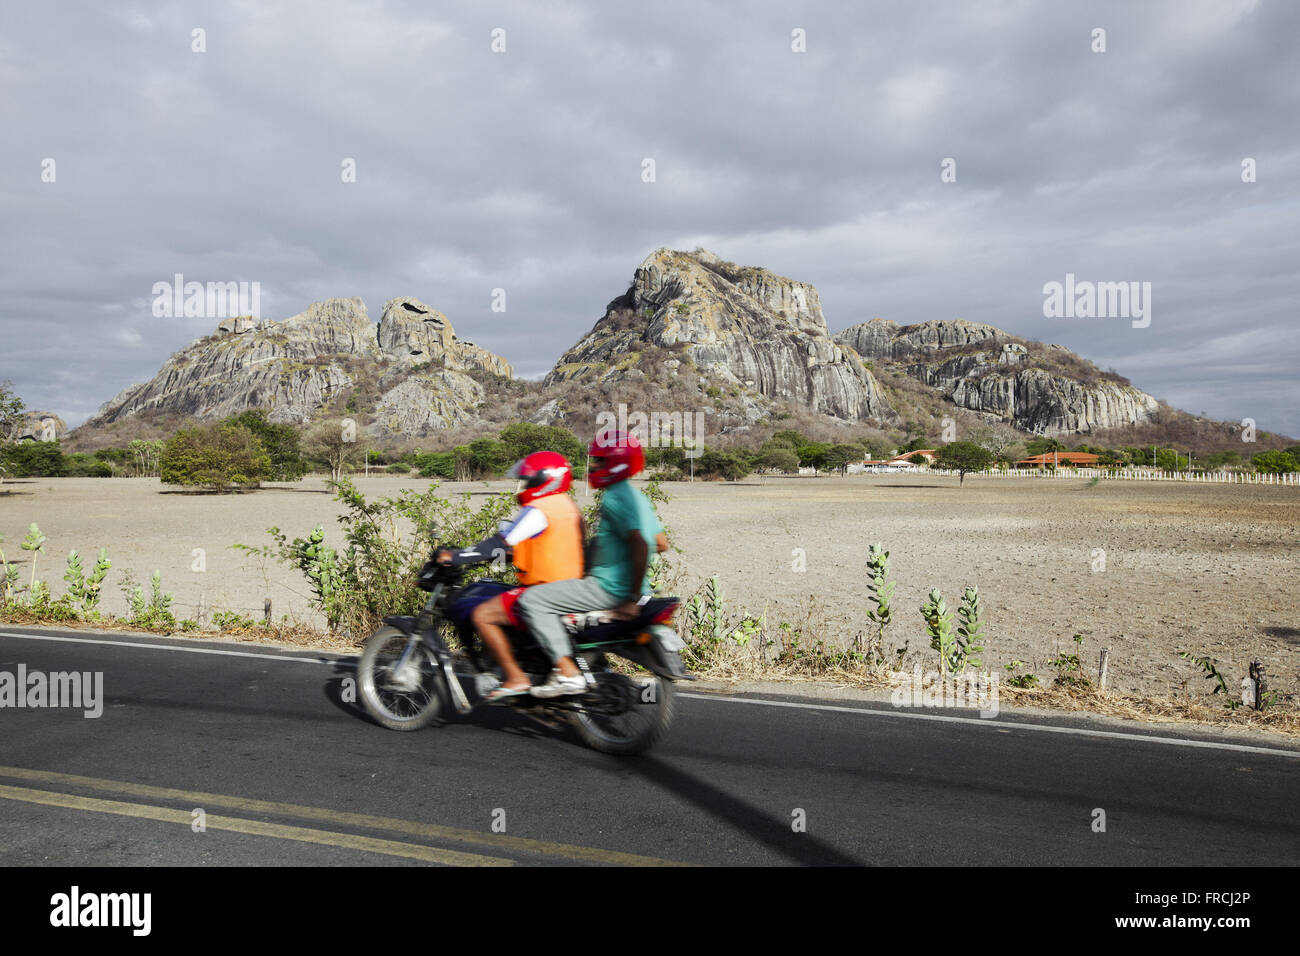 Motocyclistes sur la route qui relie la ville à l'Acude Cèdre monolithes - dans l'arrière-plan Banque D'Images